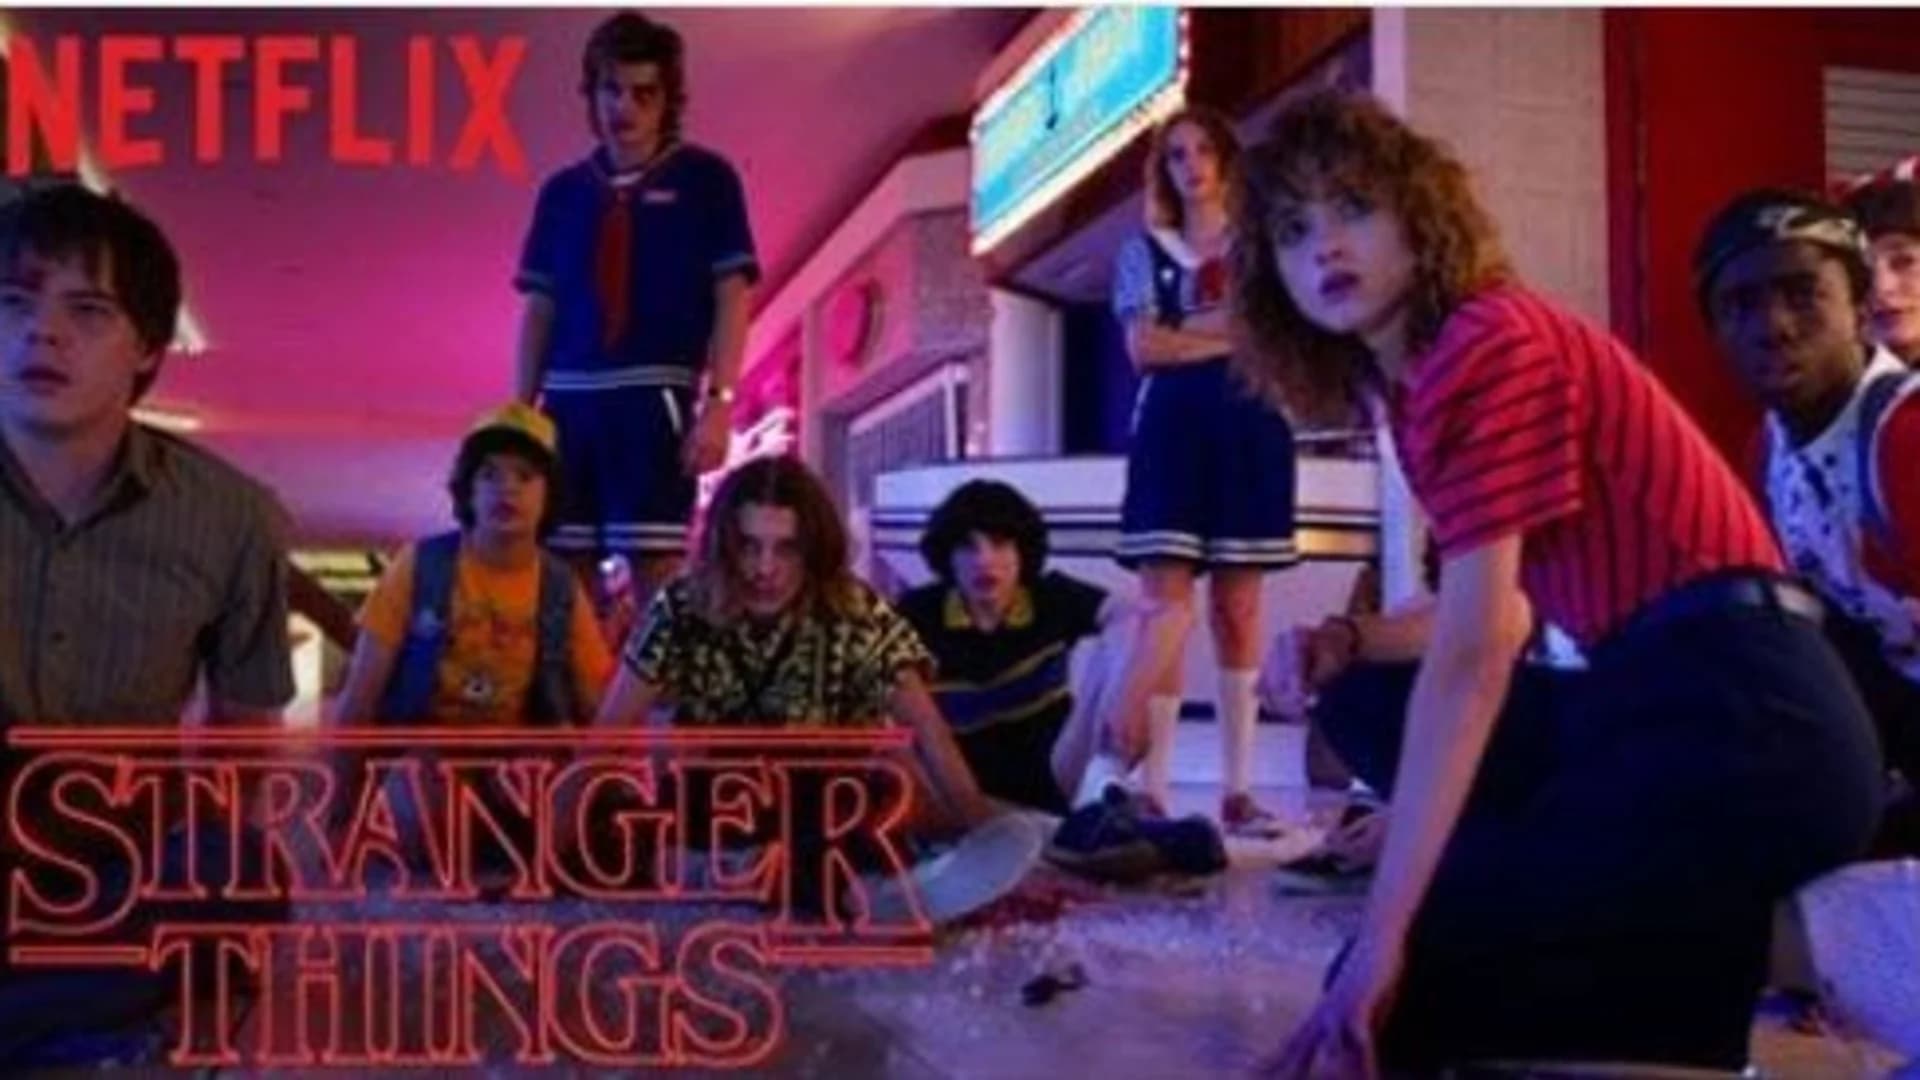 Netflix drops trailer for 3rd season of ‘Stranger Things’